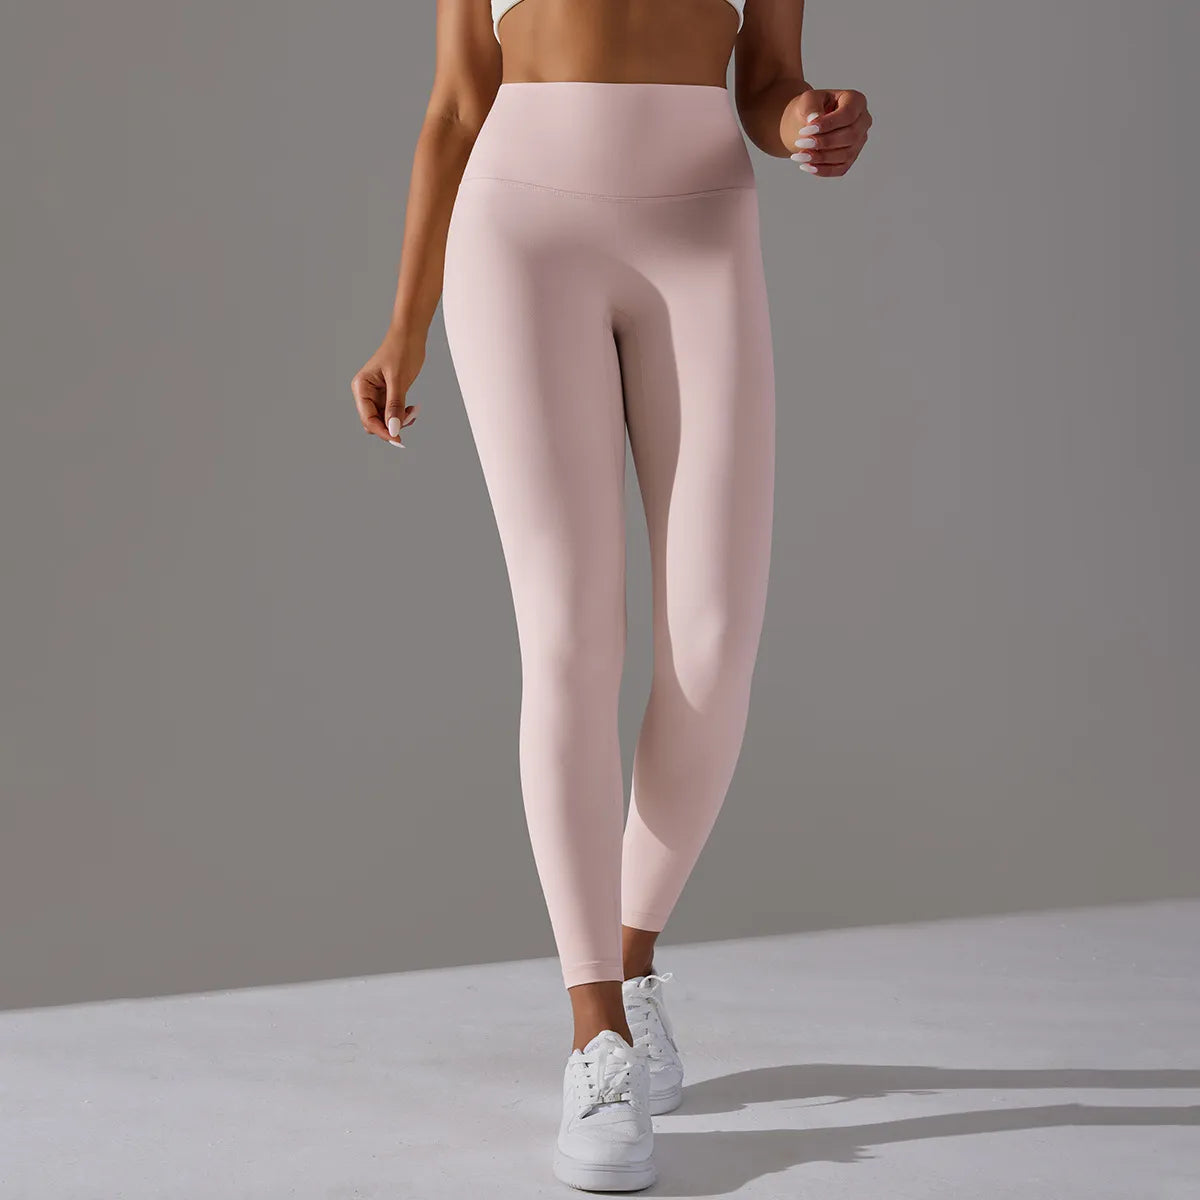 High Waisted Yoga Leggings Light Pink